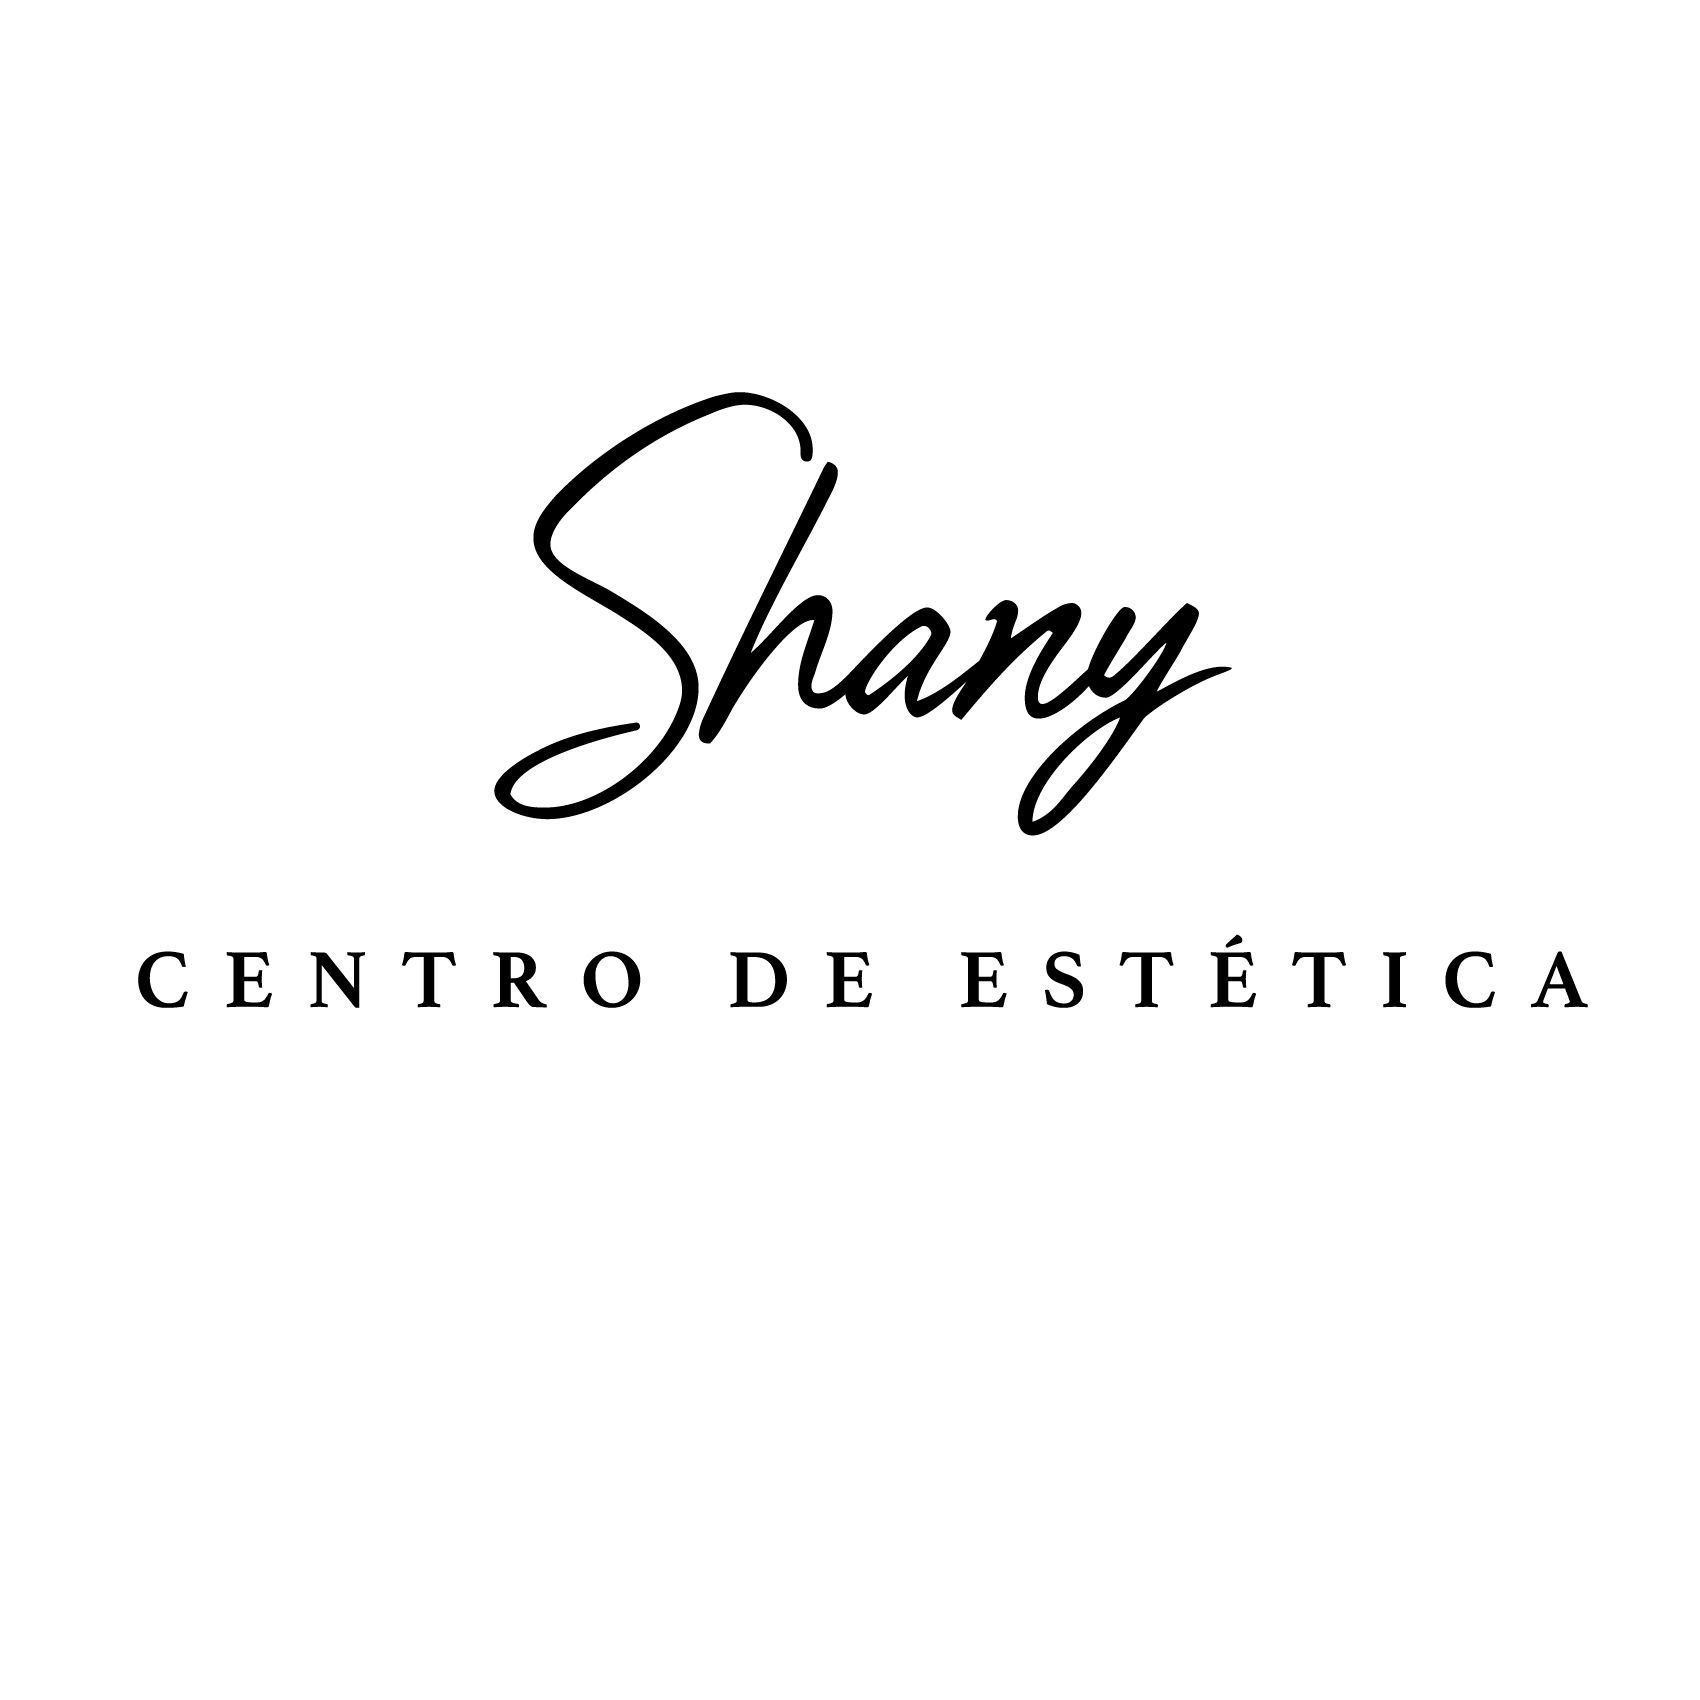 Shany Centro De Estética, Rúa Teresa Fabeiro Caamaño, 3, Bajo, 15830, Negreira